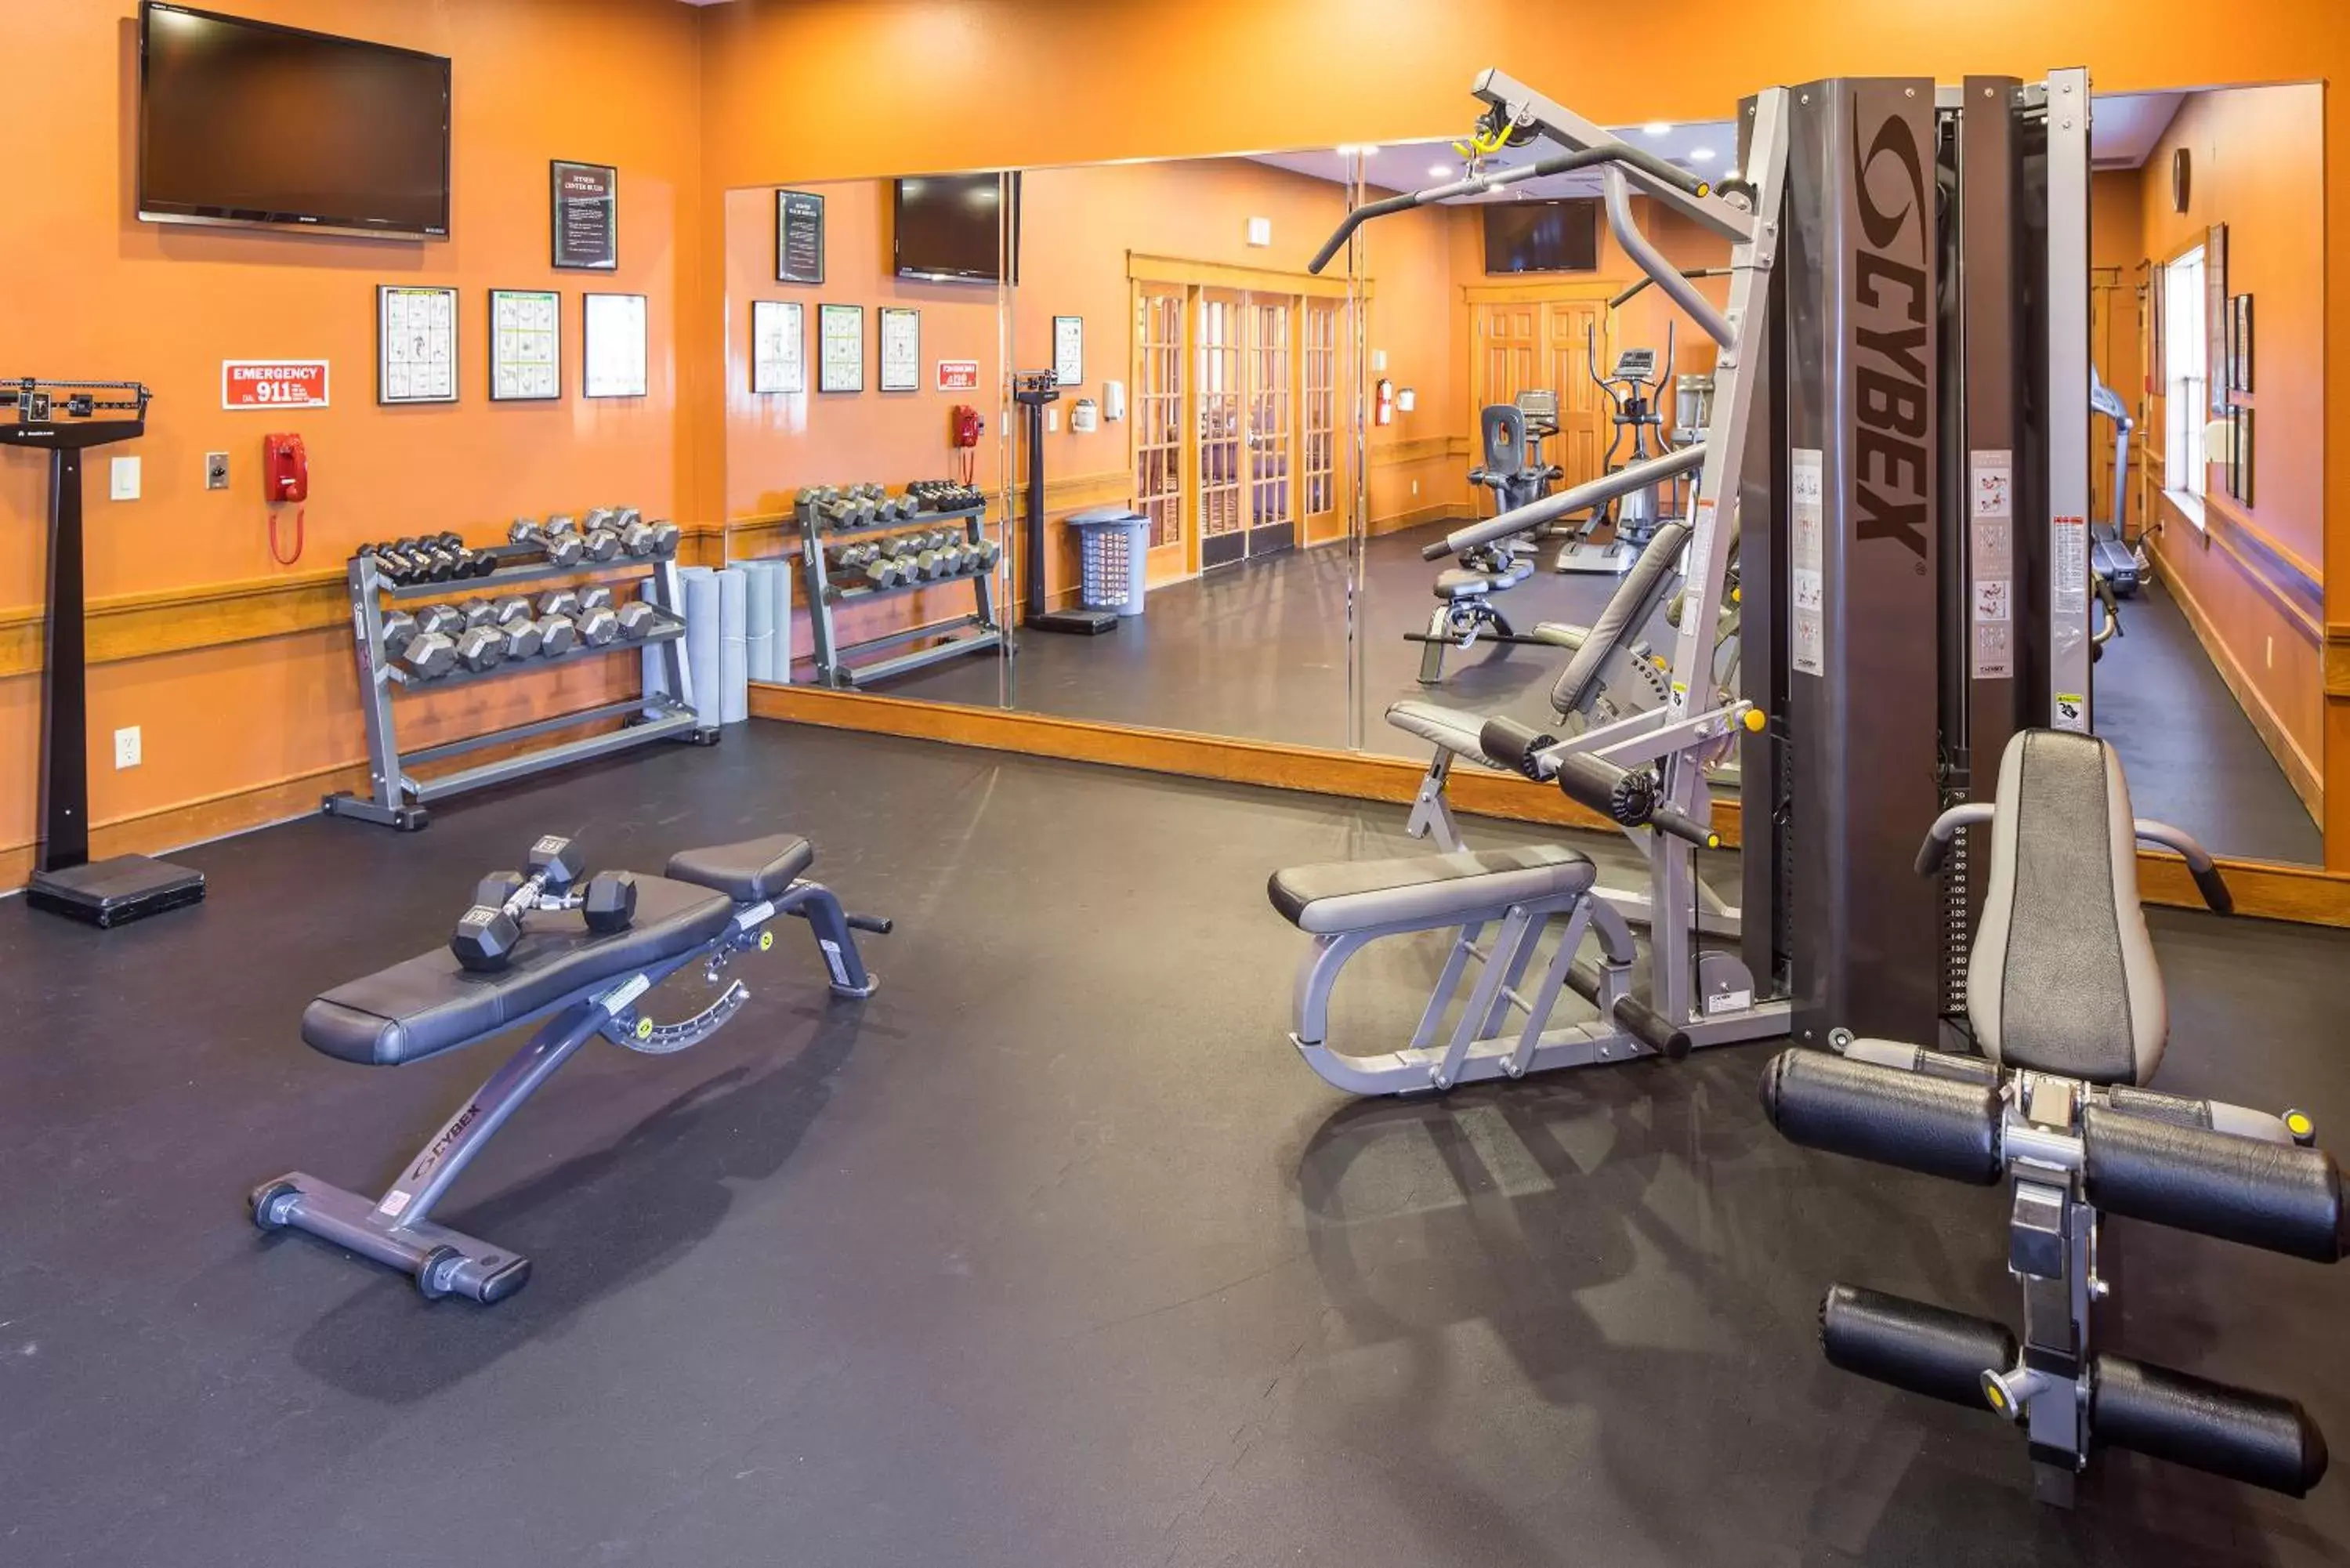 Fitness centre/facilities, Fitness Center/Facilities in Villas de Santa Fe